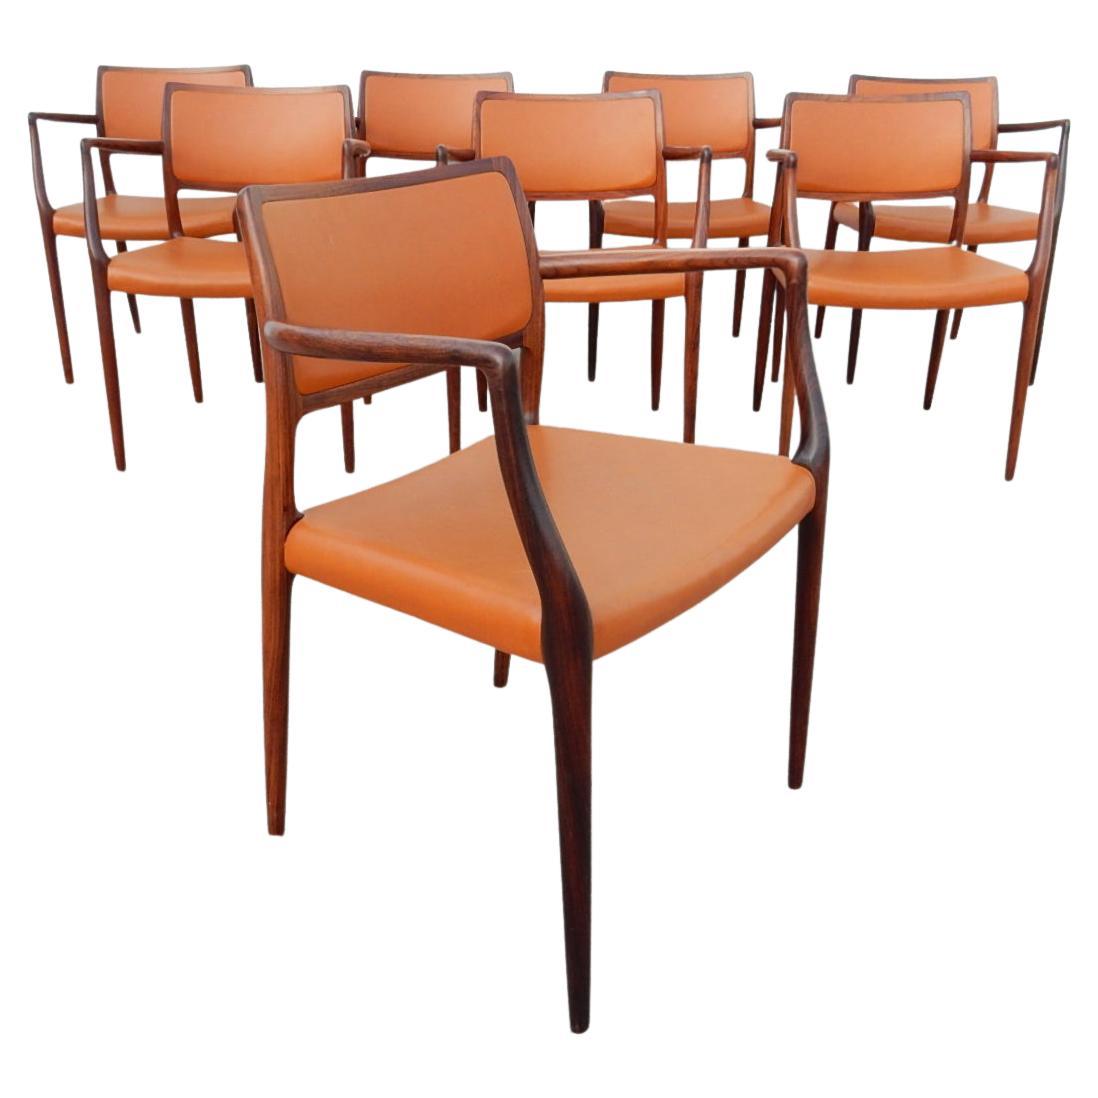 Ensemble de huit fauteuils en bois de rose exotique et en vinyle conçus par Niels Otto Møller pour I.L.A. Moller du Danemark, modèle de chaise n° 65.
De superbes chaises élégantes aux lignes épurées et au grain de bois étonnant.
Tous portent la